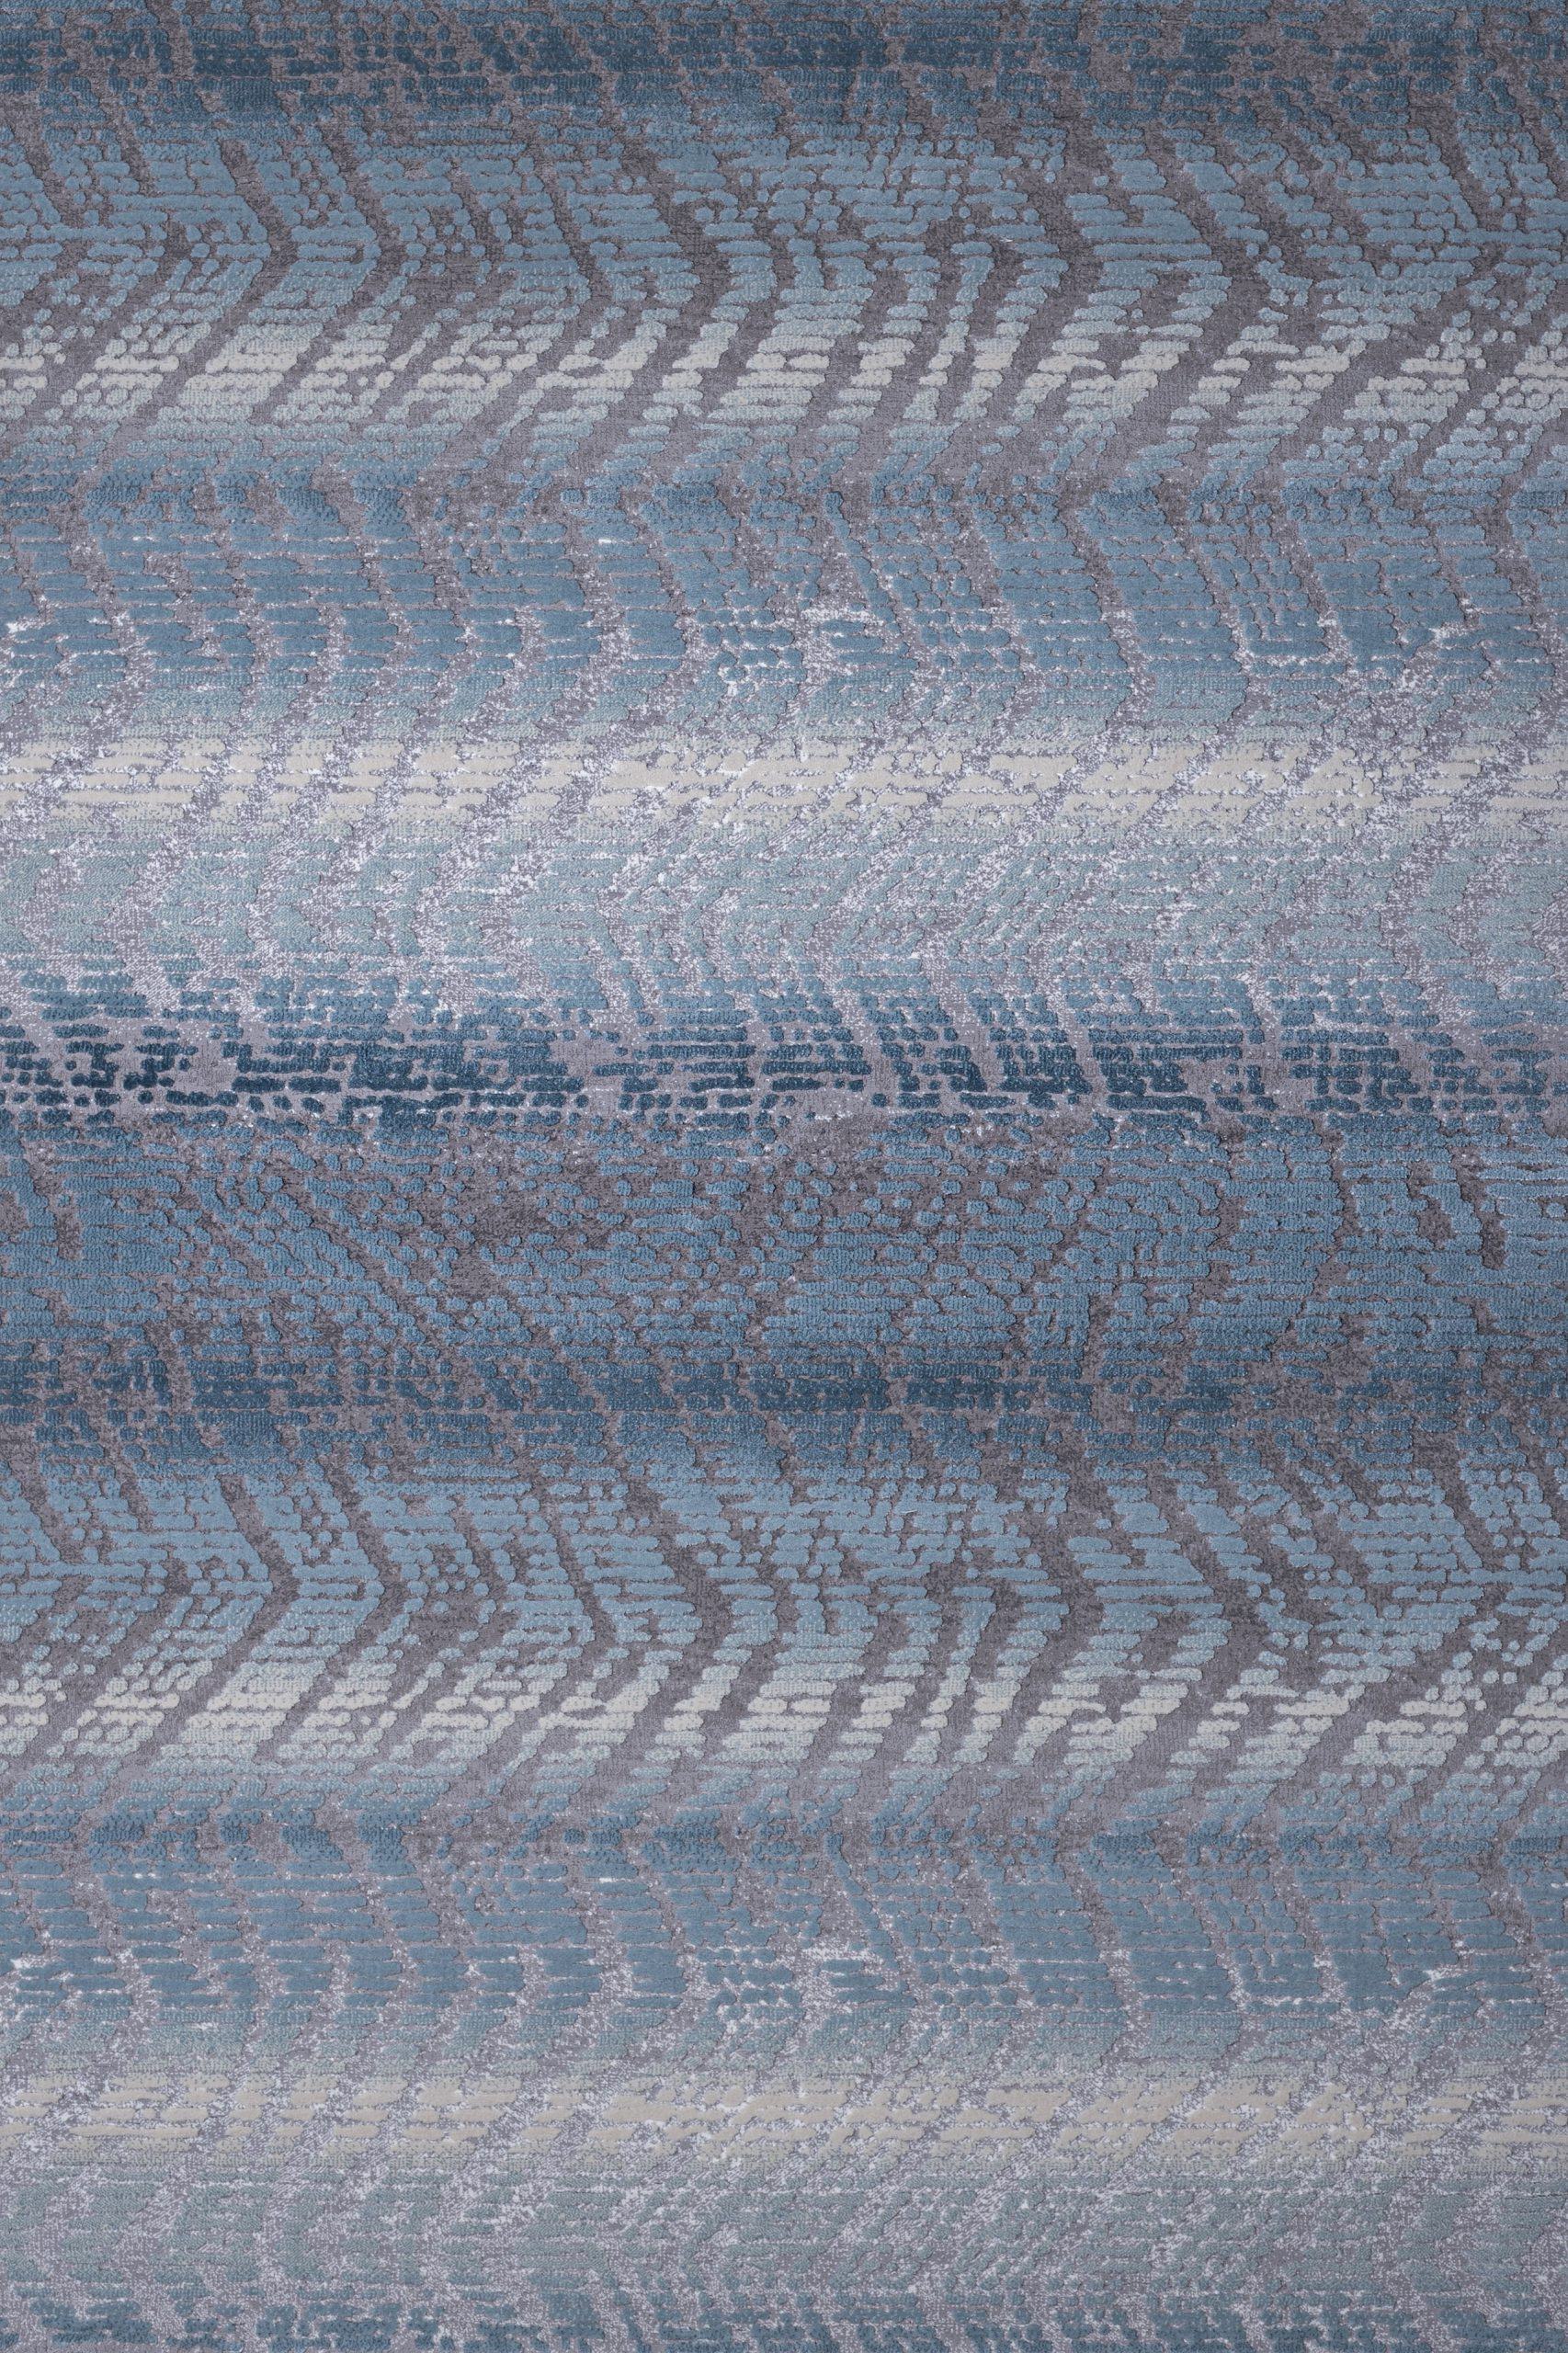 Χαλί μοντέρνο ψηφιδωτό γκρι γαλάζιο Thema 4660/933 - 3x4 Colore Colori